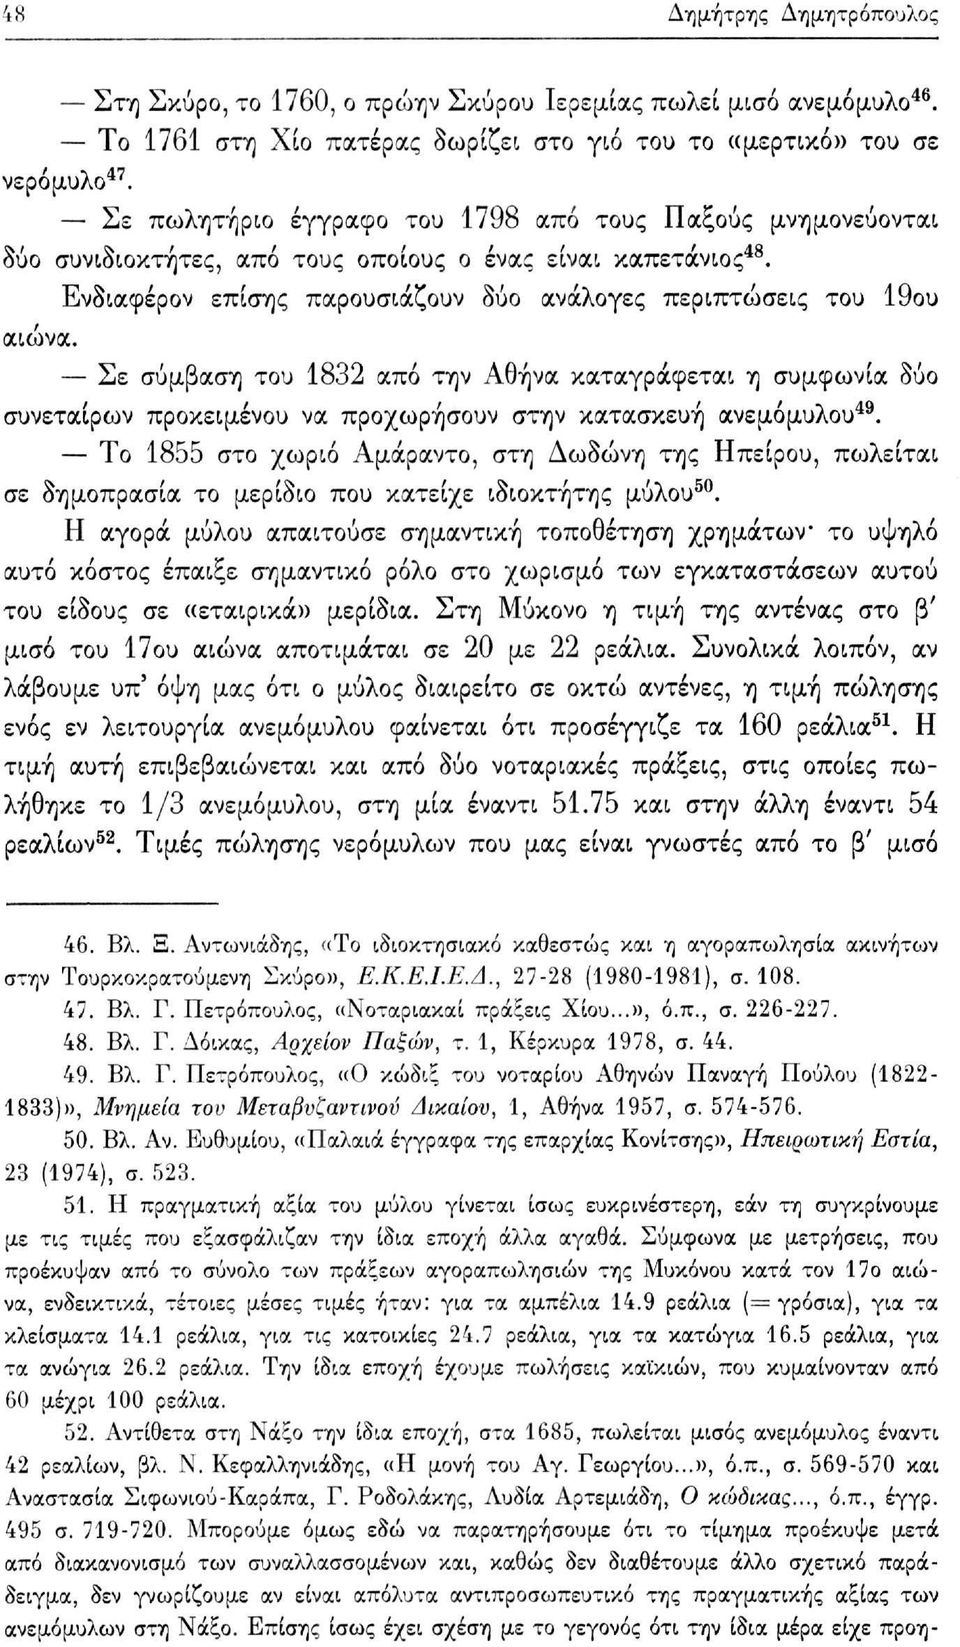 Σε σύμβαση του 1832 από την Αθήνα καταγράφεται η συμφωνία δύο συνεταίρων προκειμένου να προχωρήσουν στην κατασκευή ανεμόμυλου 49.